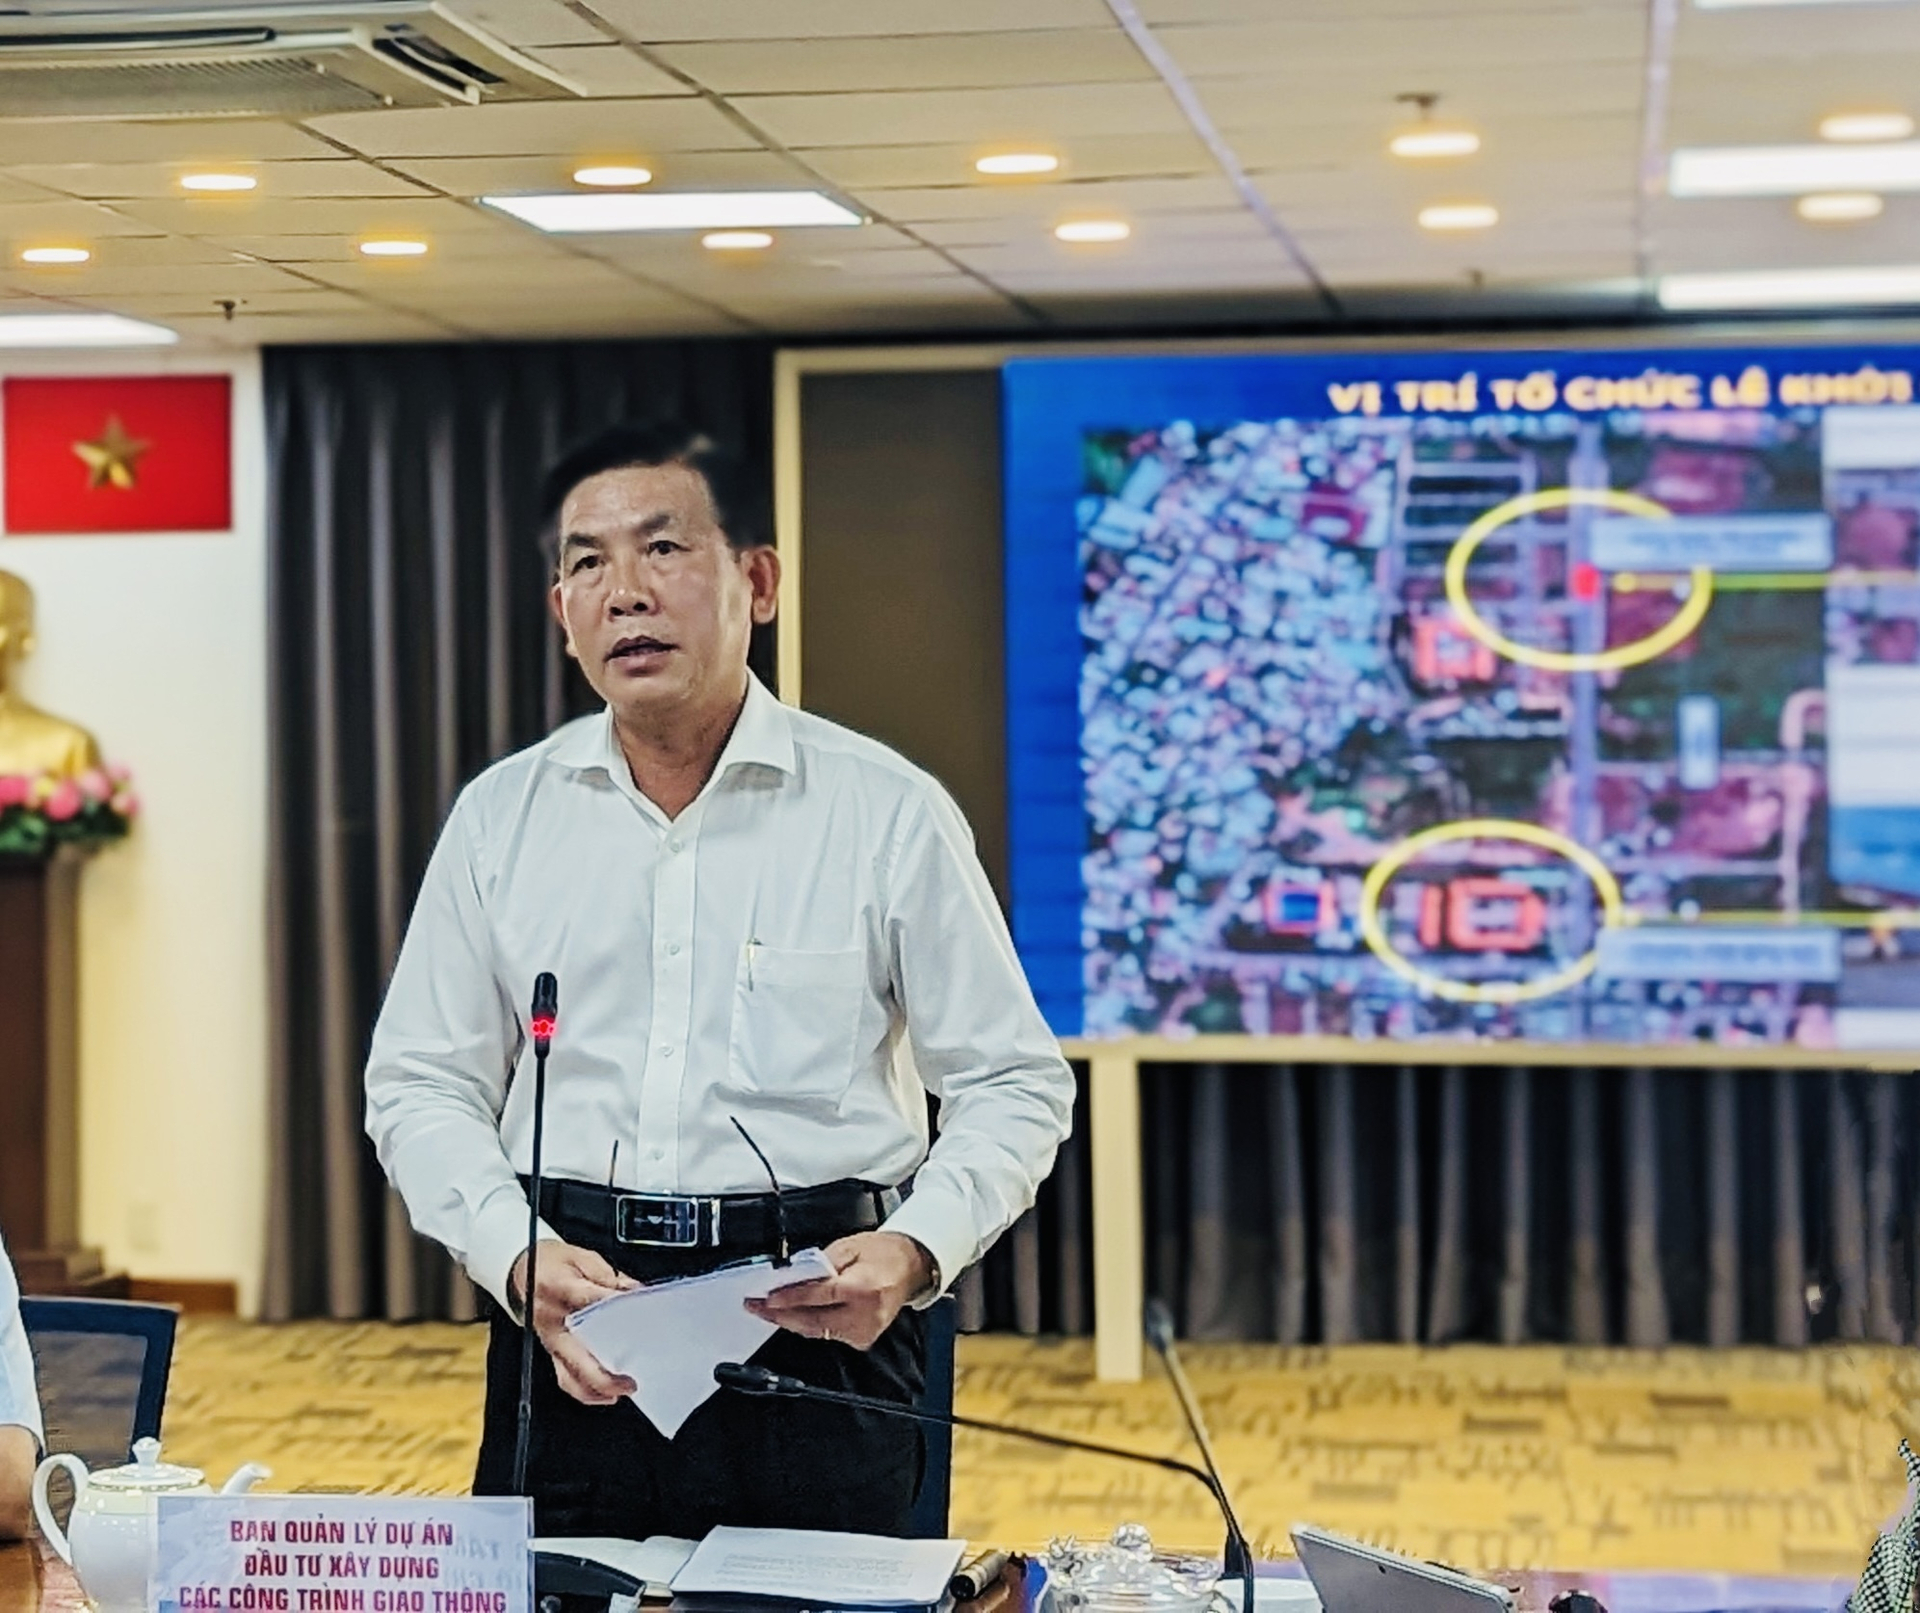 Ông Lương Minh Phúc - Trưởng ban quản lý dự án đầu tư xây dựng các công trình giao thông TP.HCM